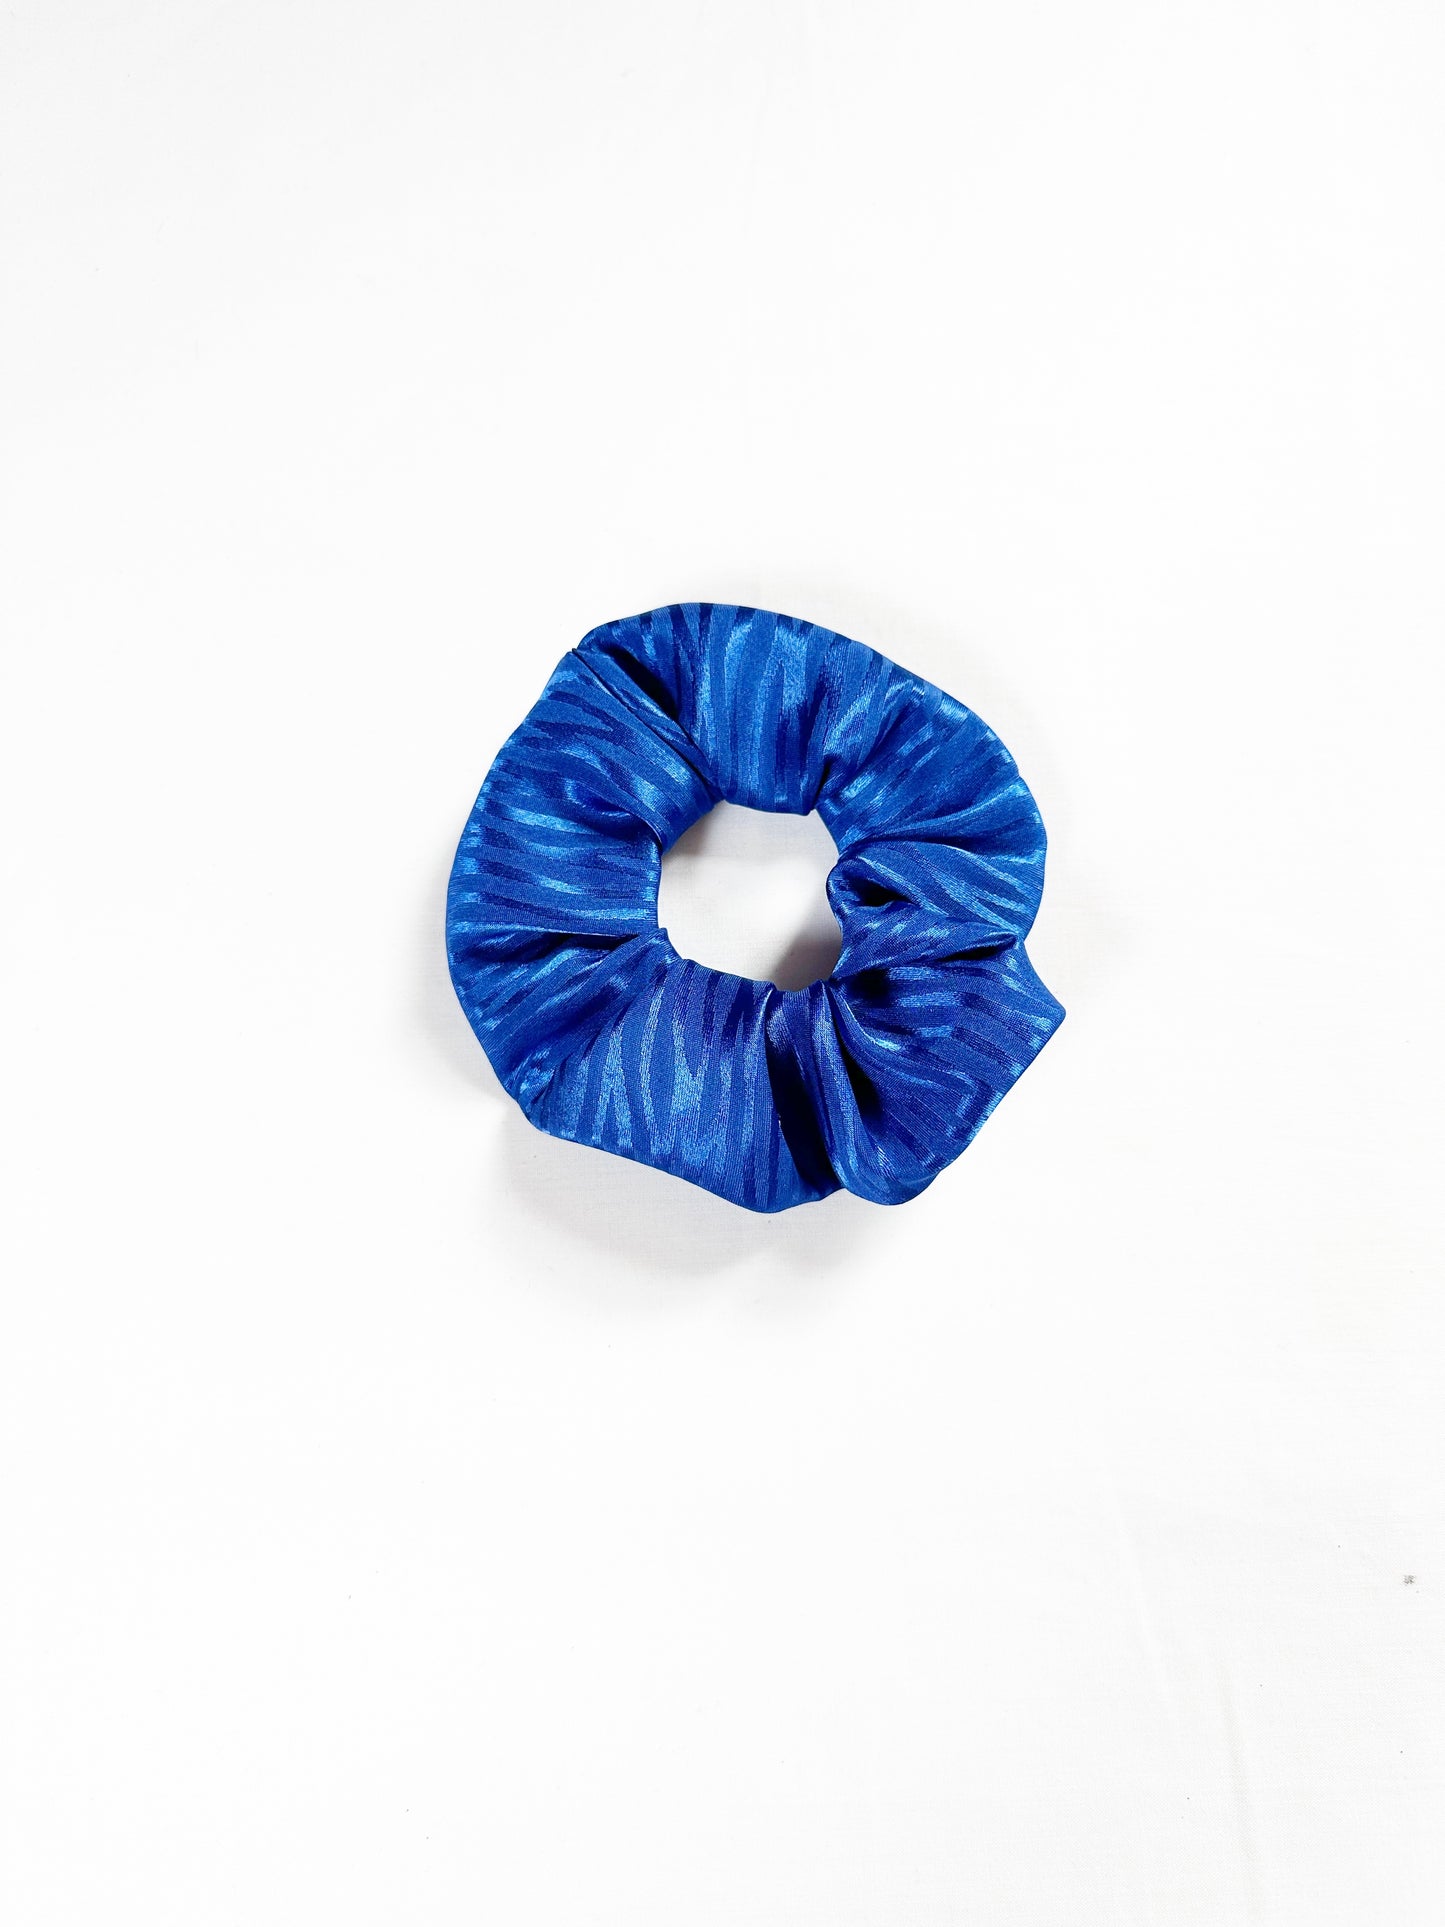 Mini Scrunchie in electric blue zebra silk